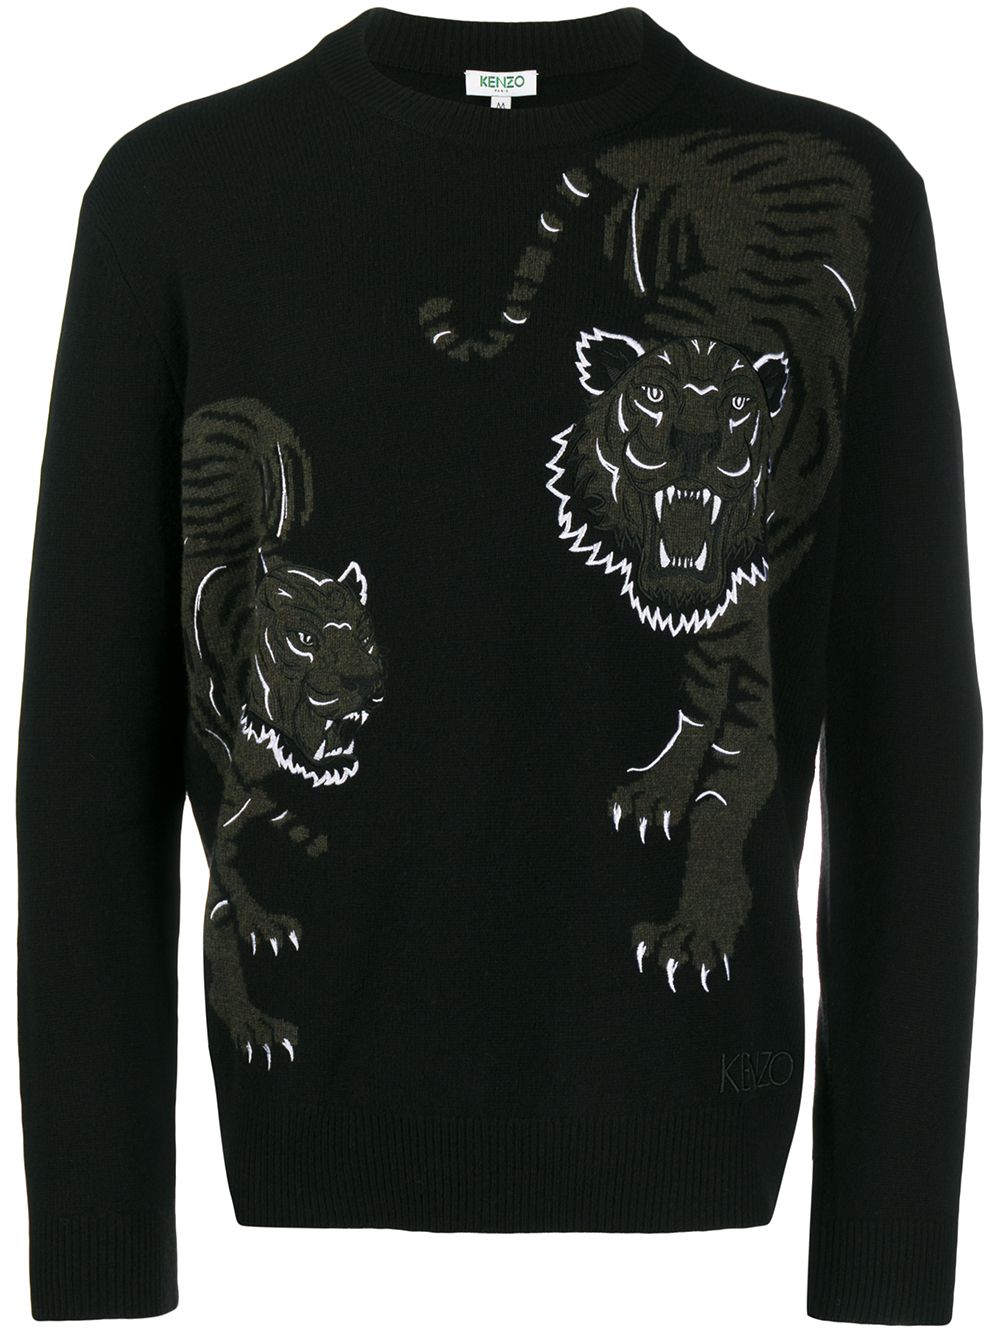 фото Kenzo свитер с вышивкой Tiger